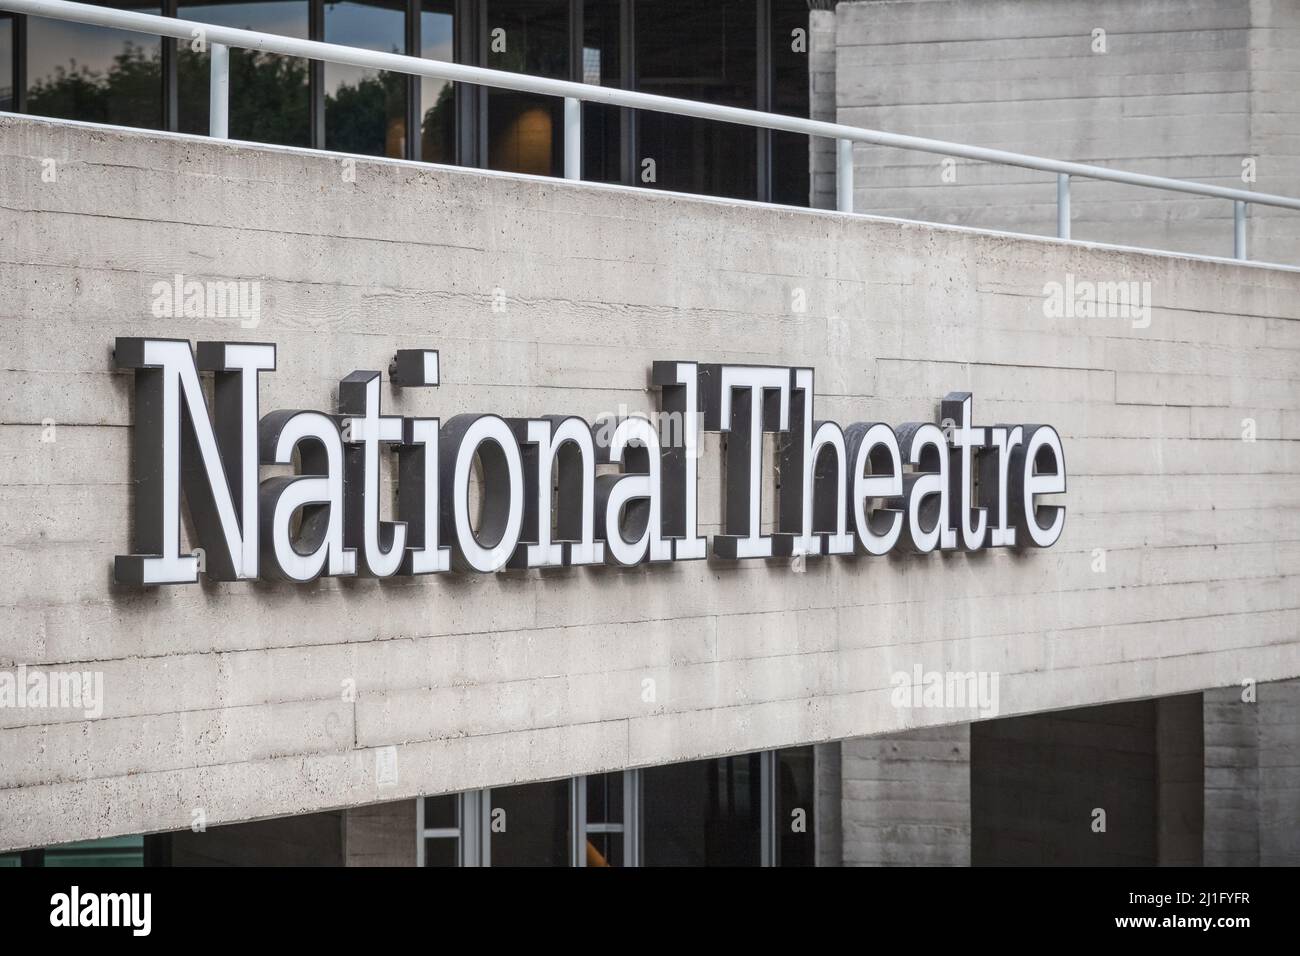 Londres, Royaume-Uni - 19 juillet 2021 - la signalisation et l'architecture brutaliste du National Theatre dans le quartier de South Bank Banque D'Images